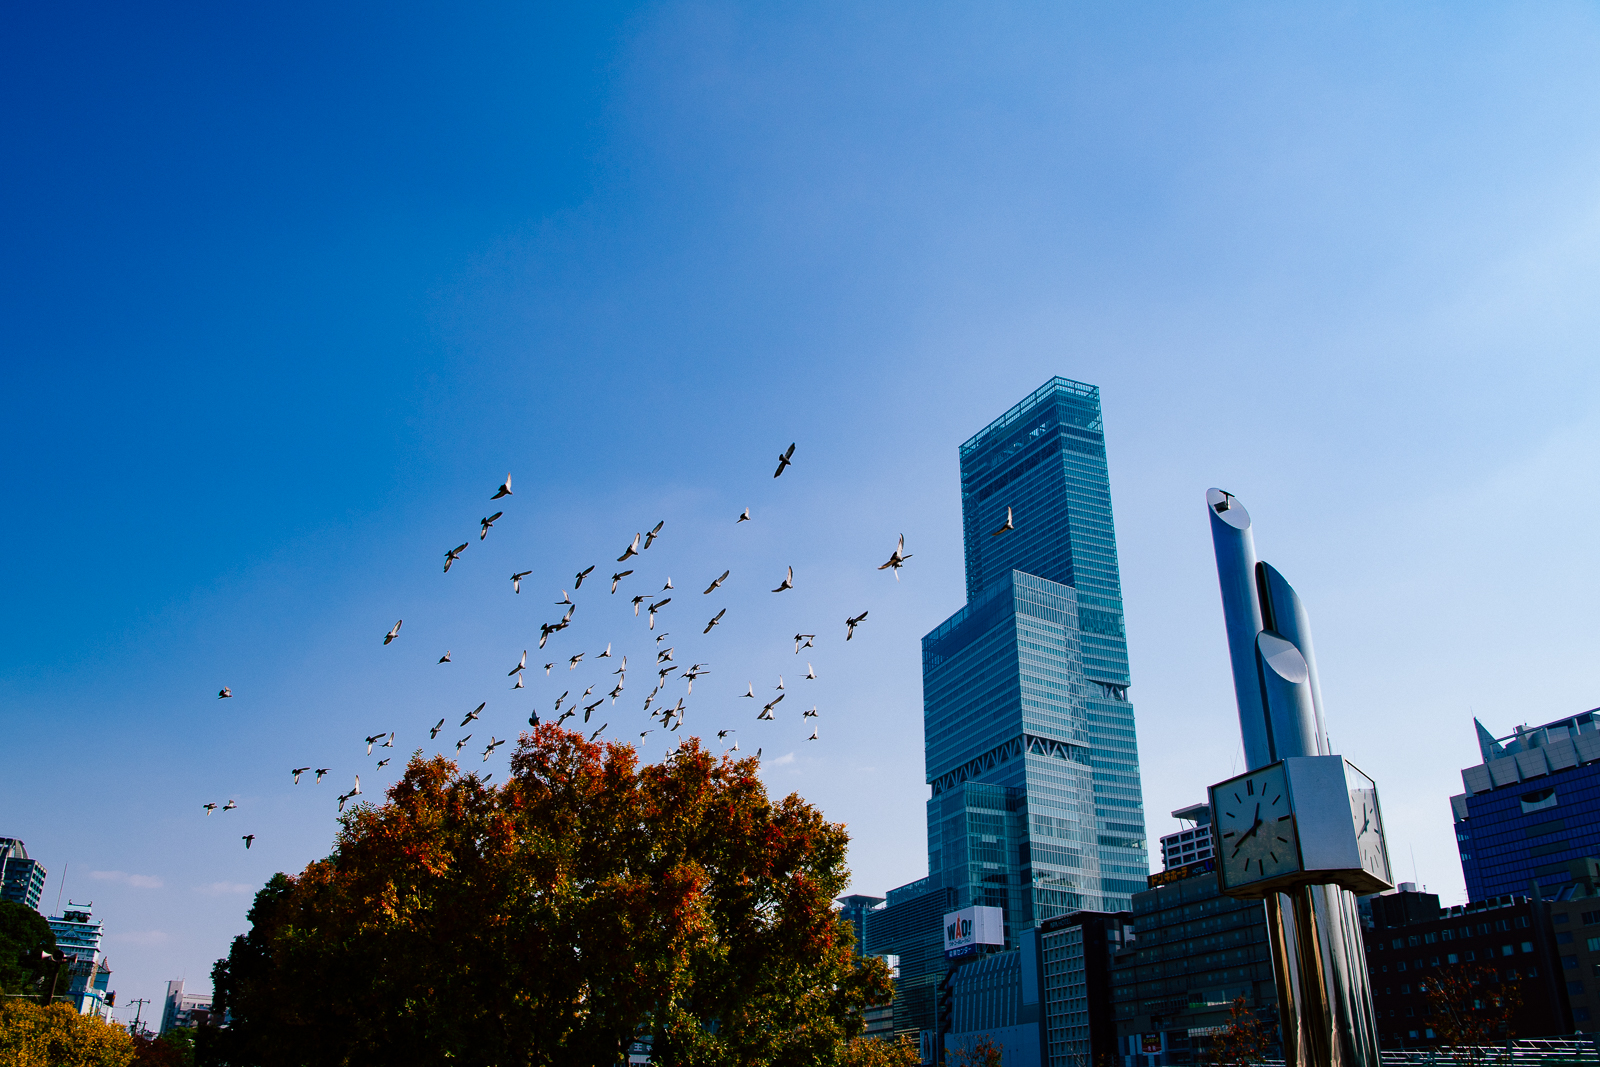 天王寺公園から眺めるあべのハルカス、大阪マリオット都ホテル。鳩が舞う青空に伸びる高層ビル。